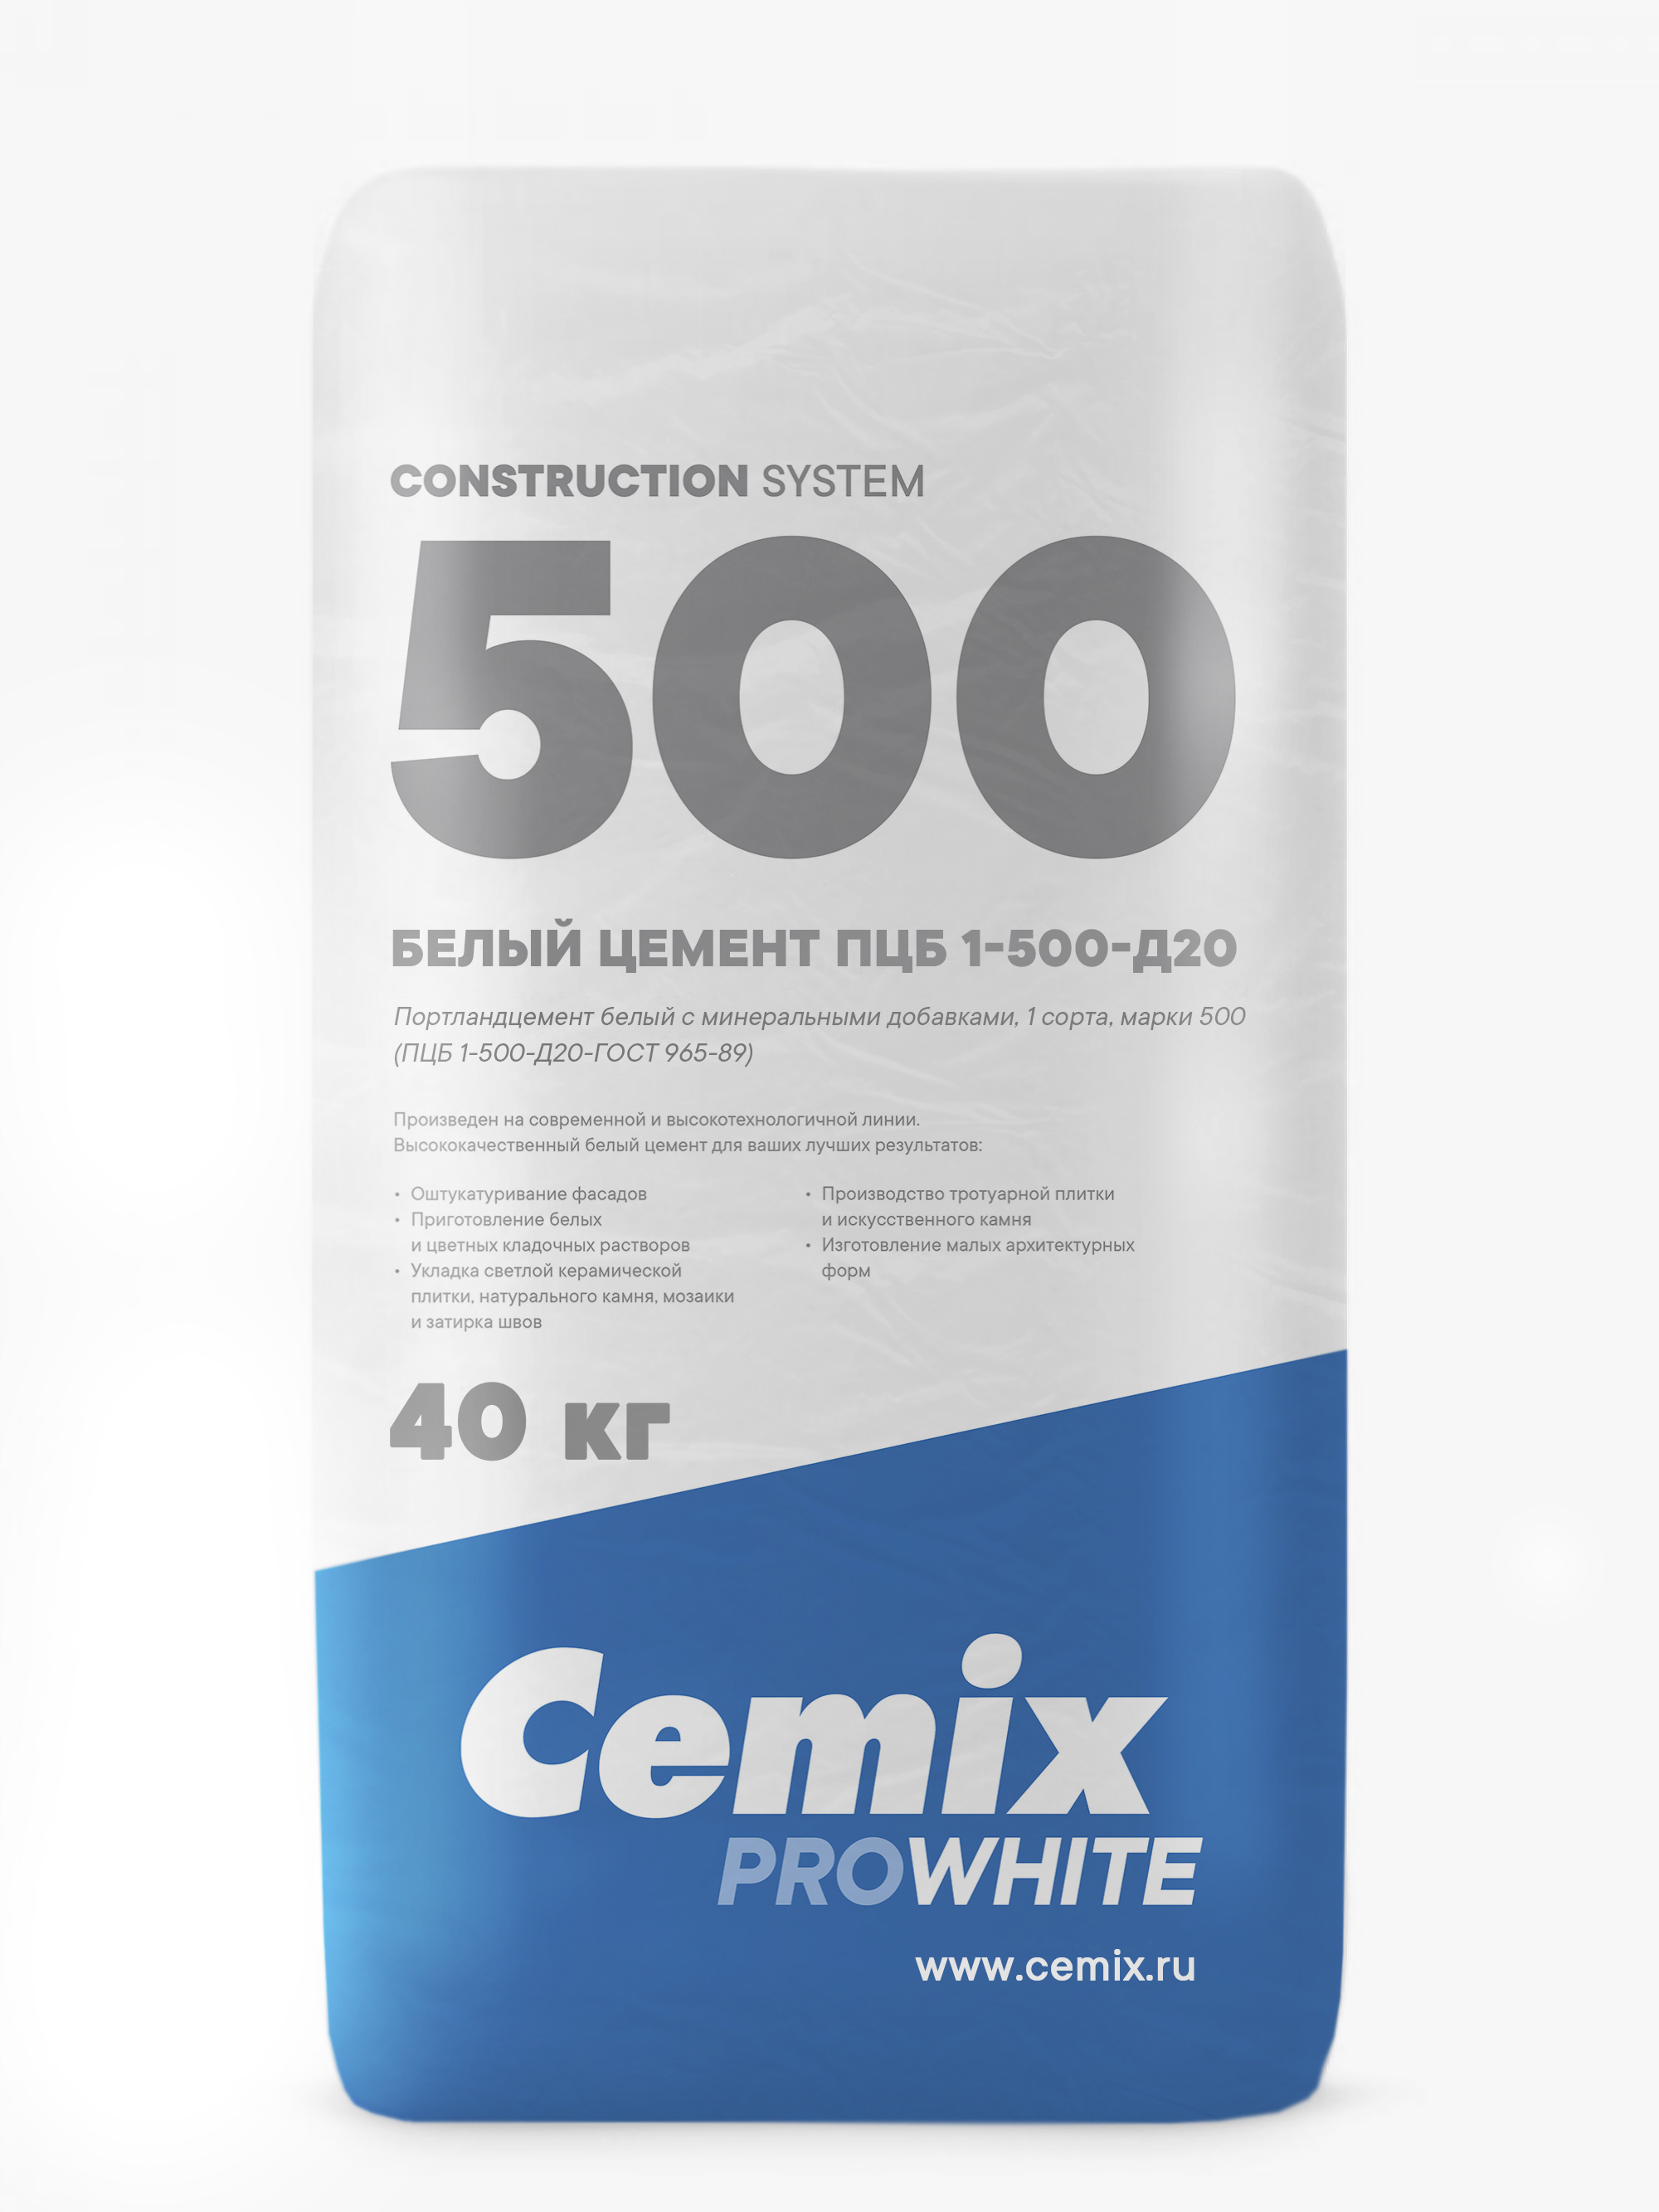 Цемент (Россия, Cemix) ПЦБ 1 - 500 -Д20 мешок 40 кг в слинг-беге (1400кг)